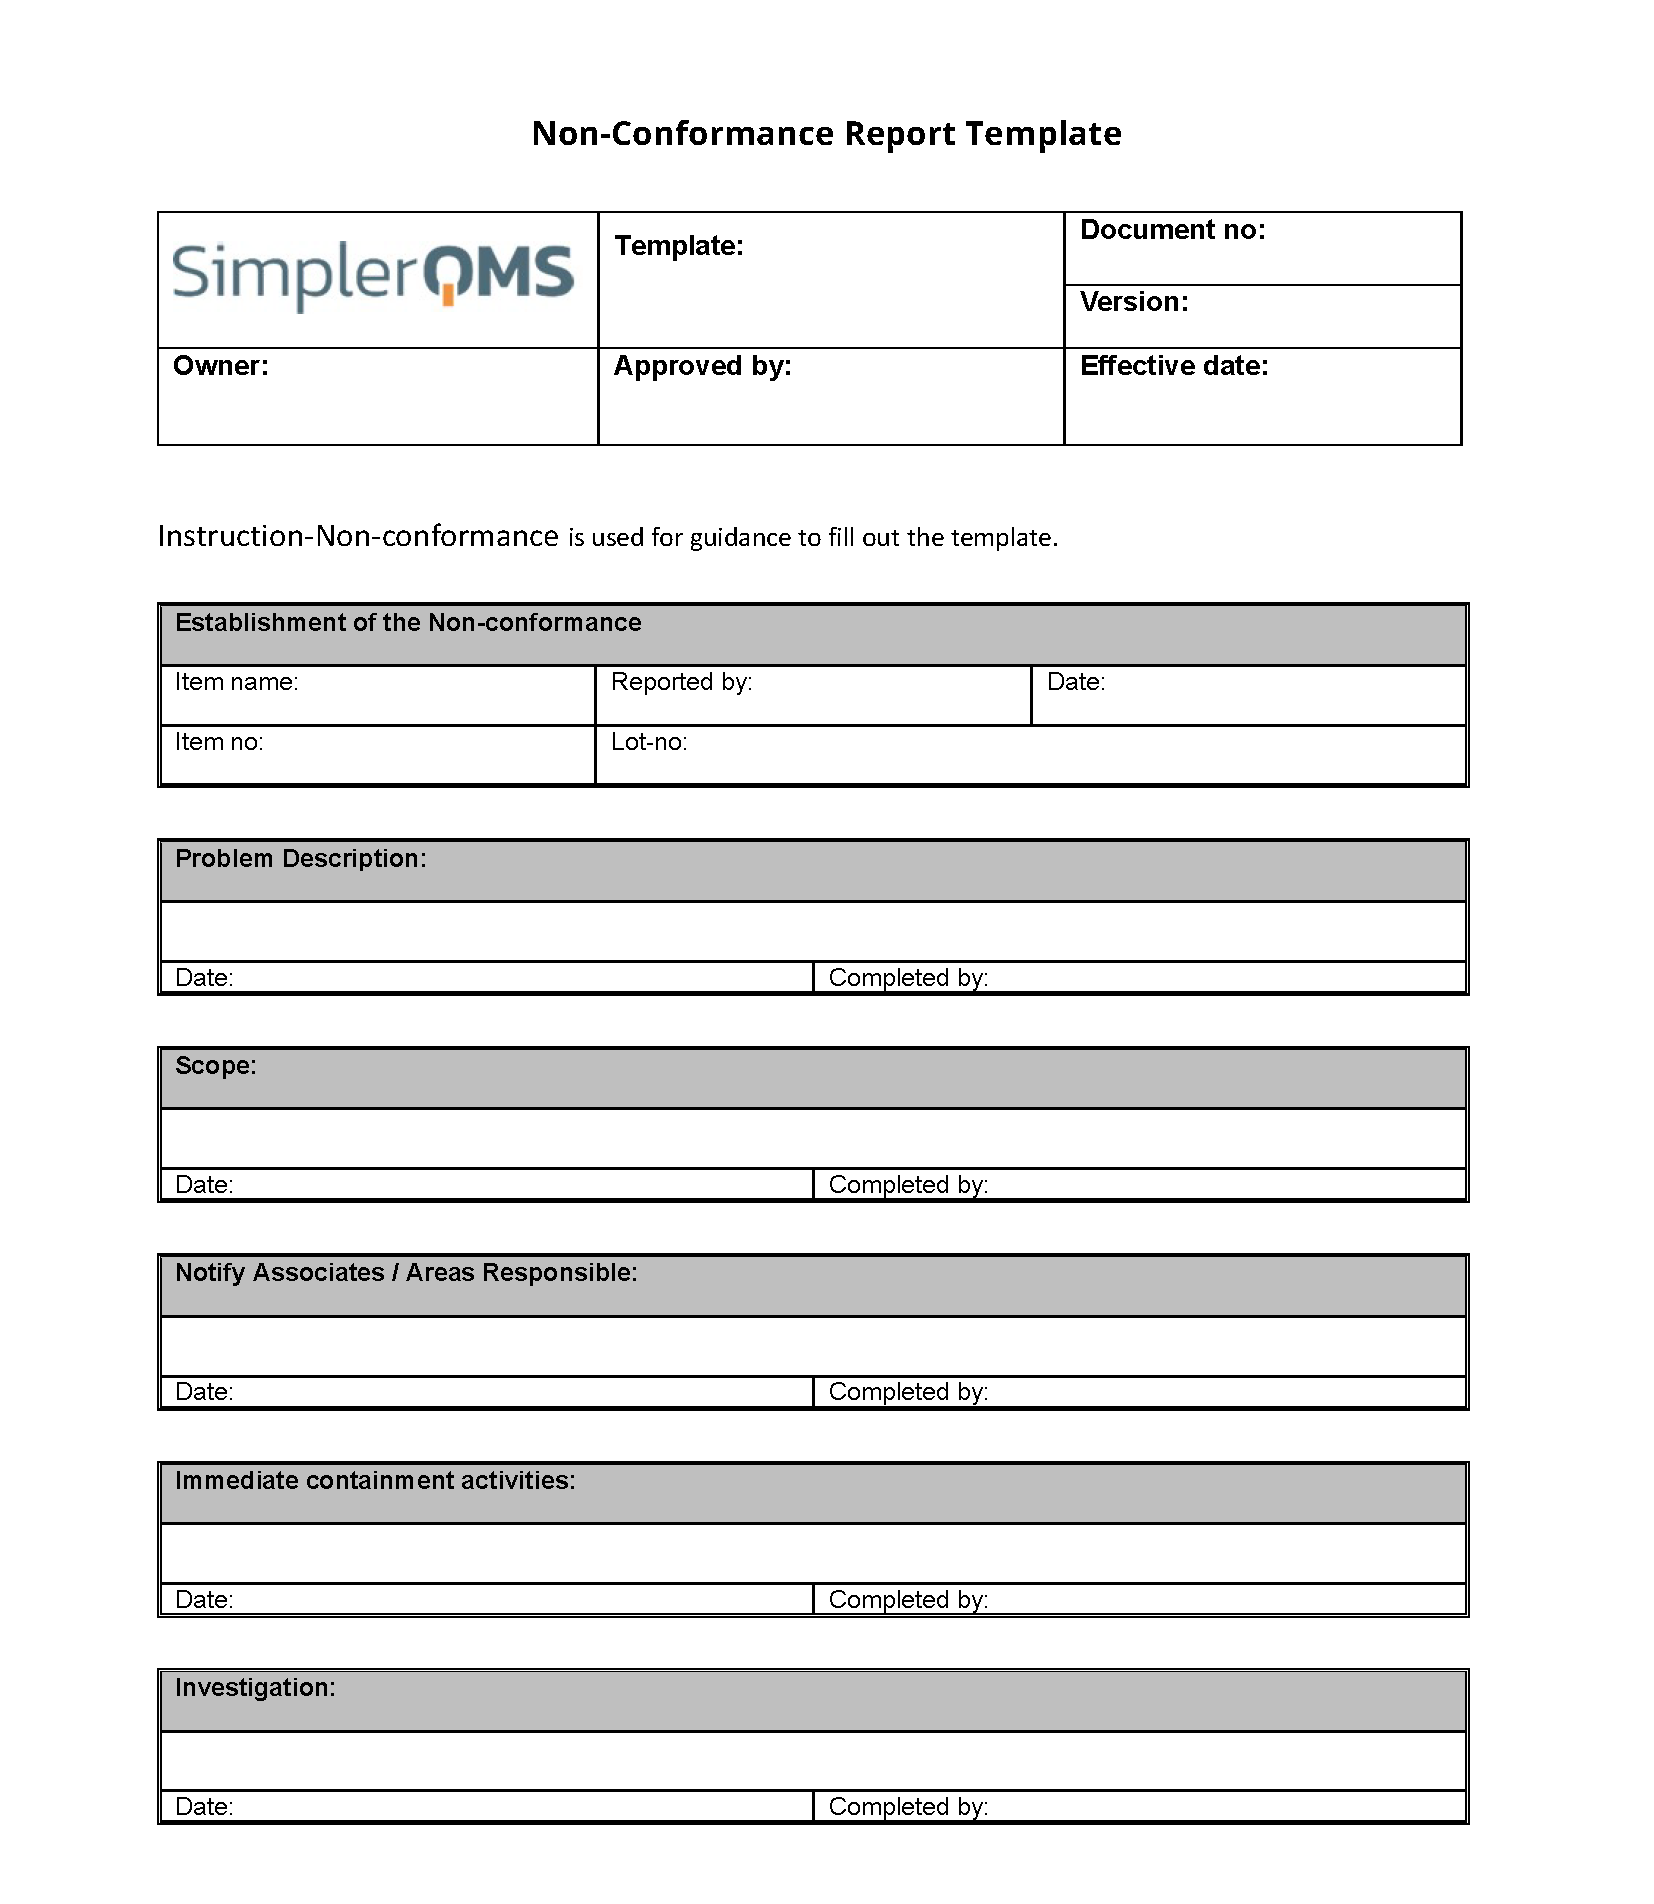 Non-Conformance Report Template [Free Download] - SimplerQMS With Non Conformance Report Form Template